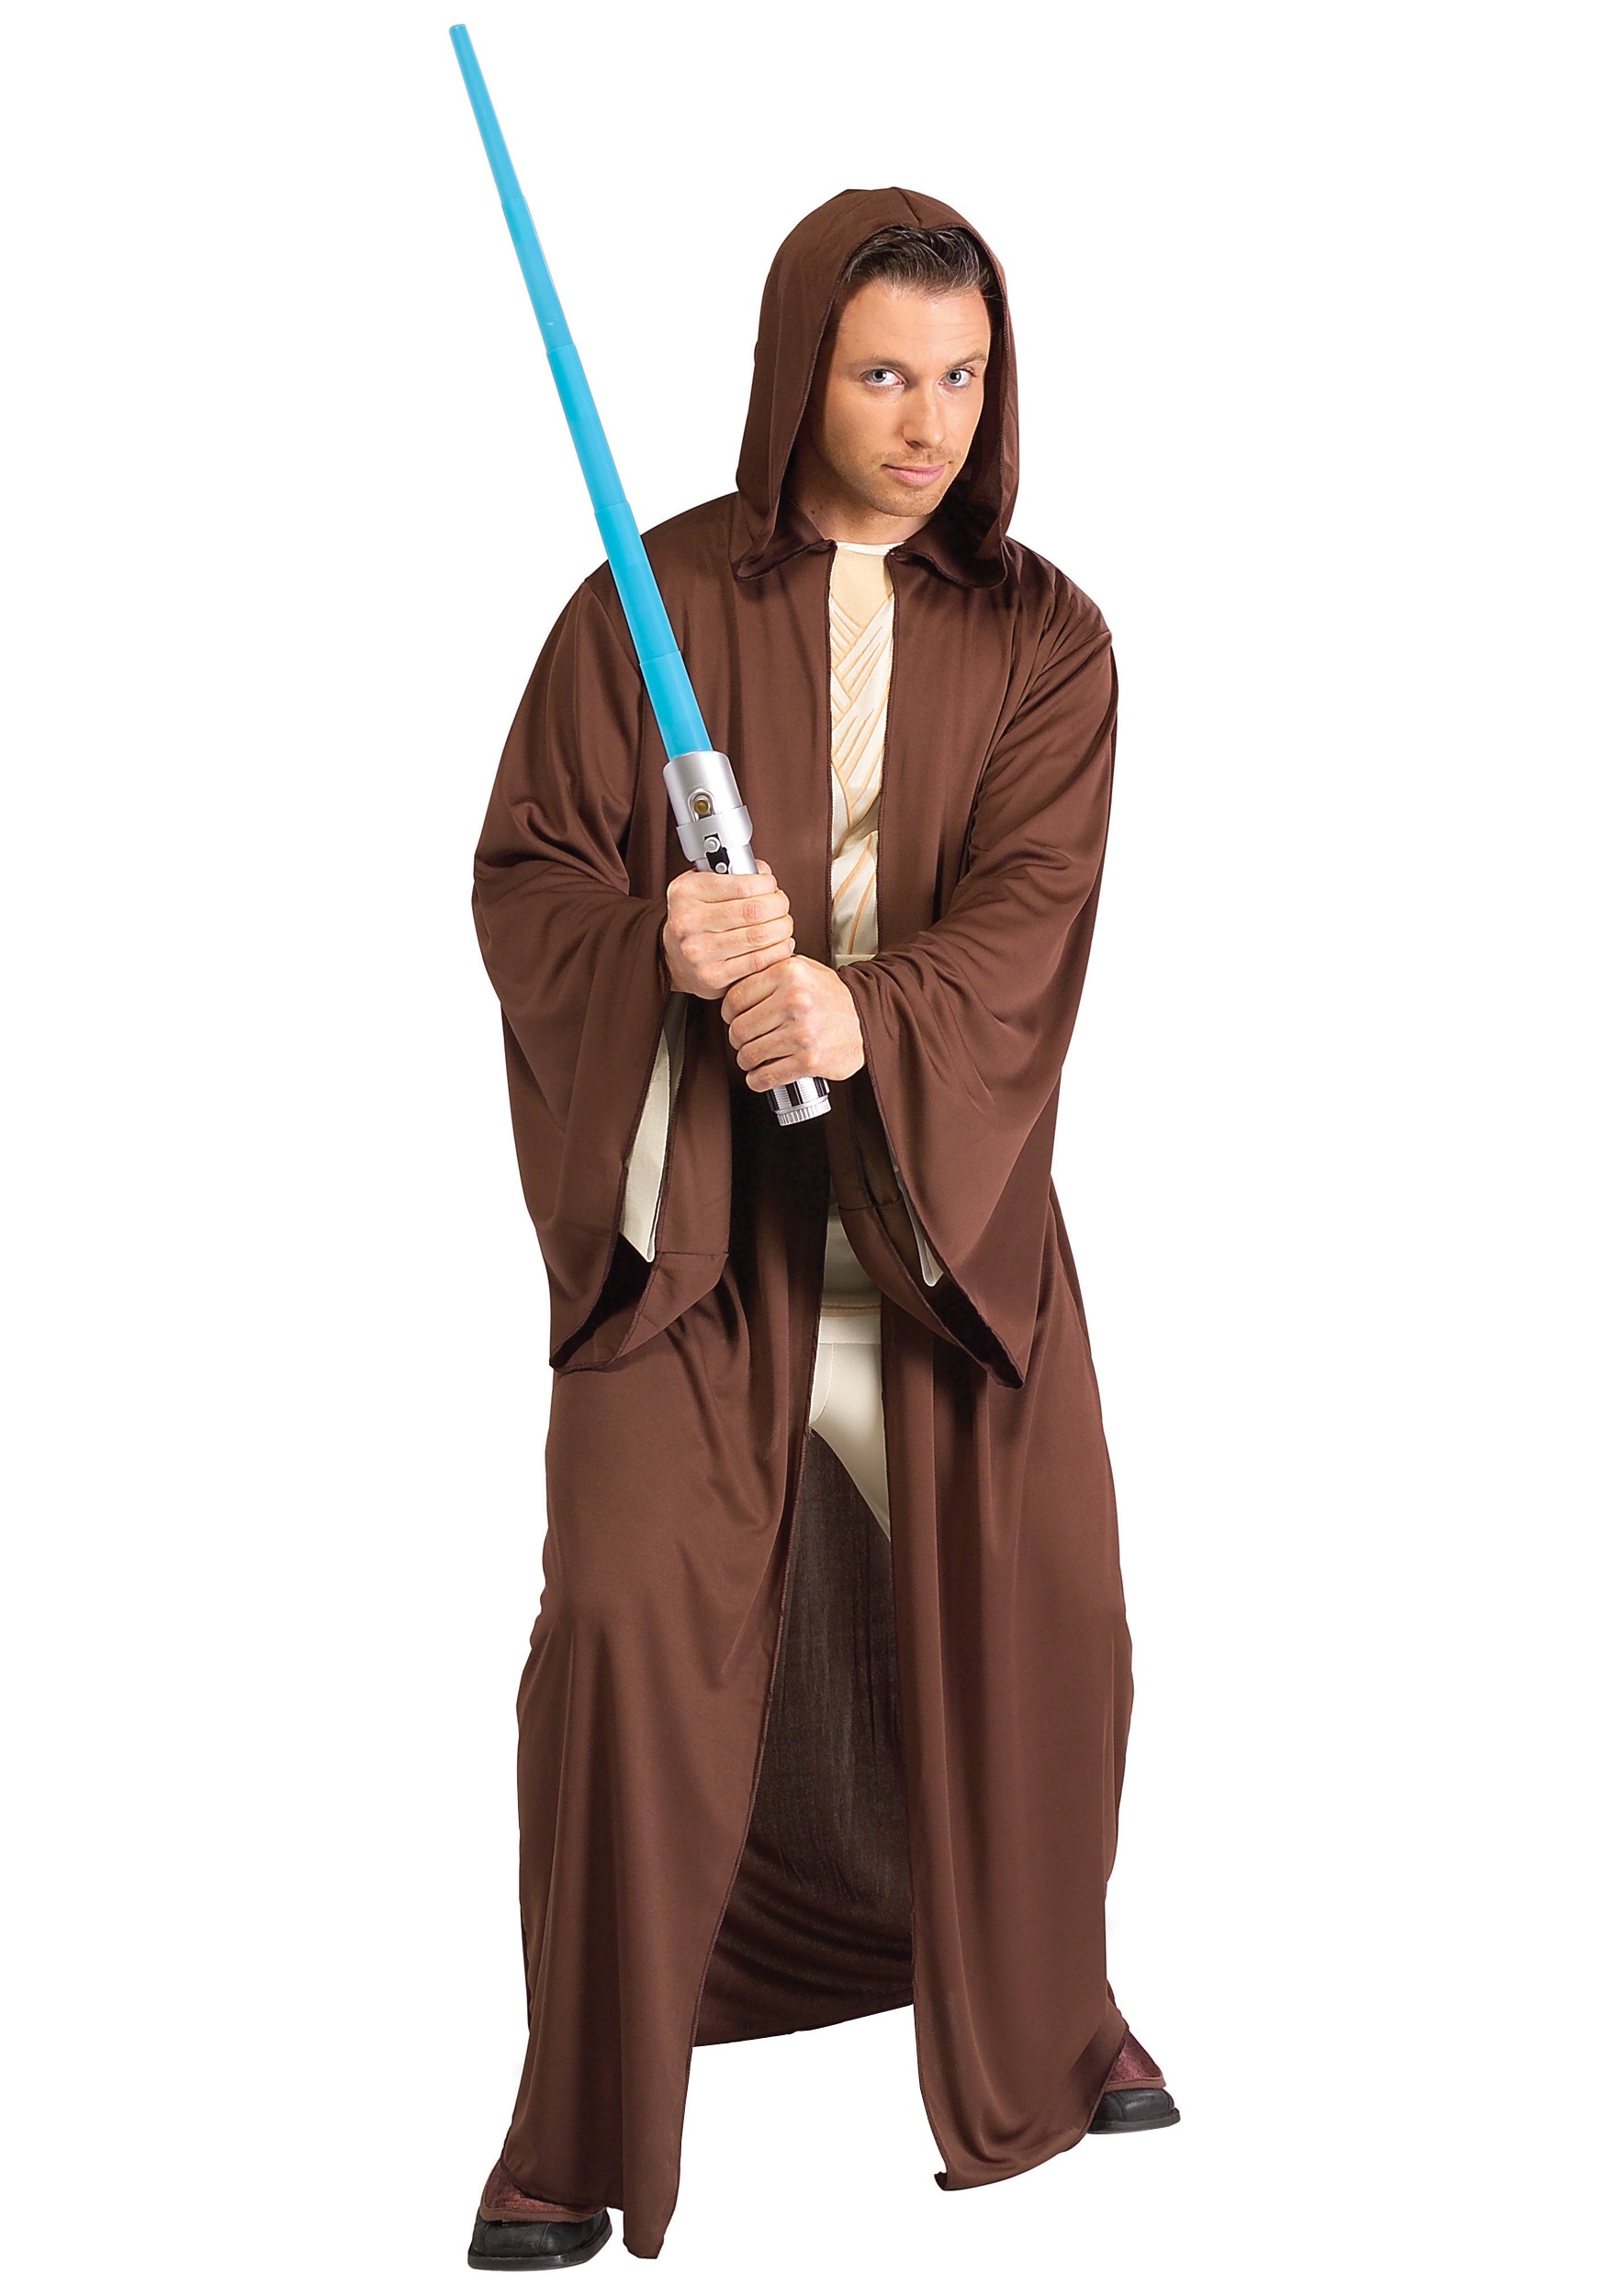 Star Jedi kostuum met lightsaber Nu €24,95! - FeestinjeBeest.nl